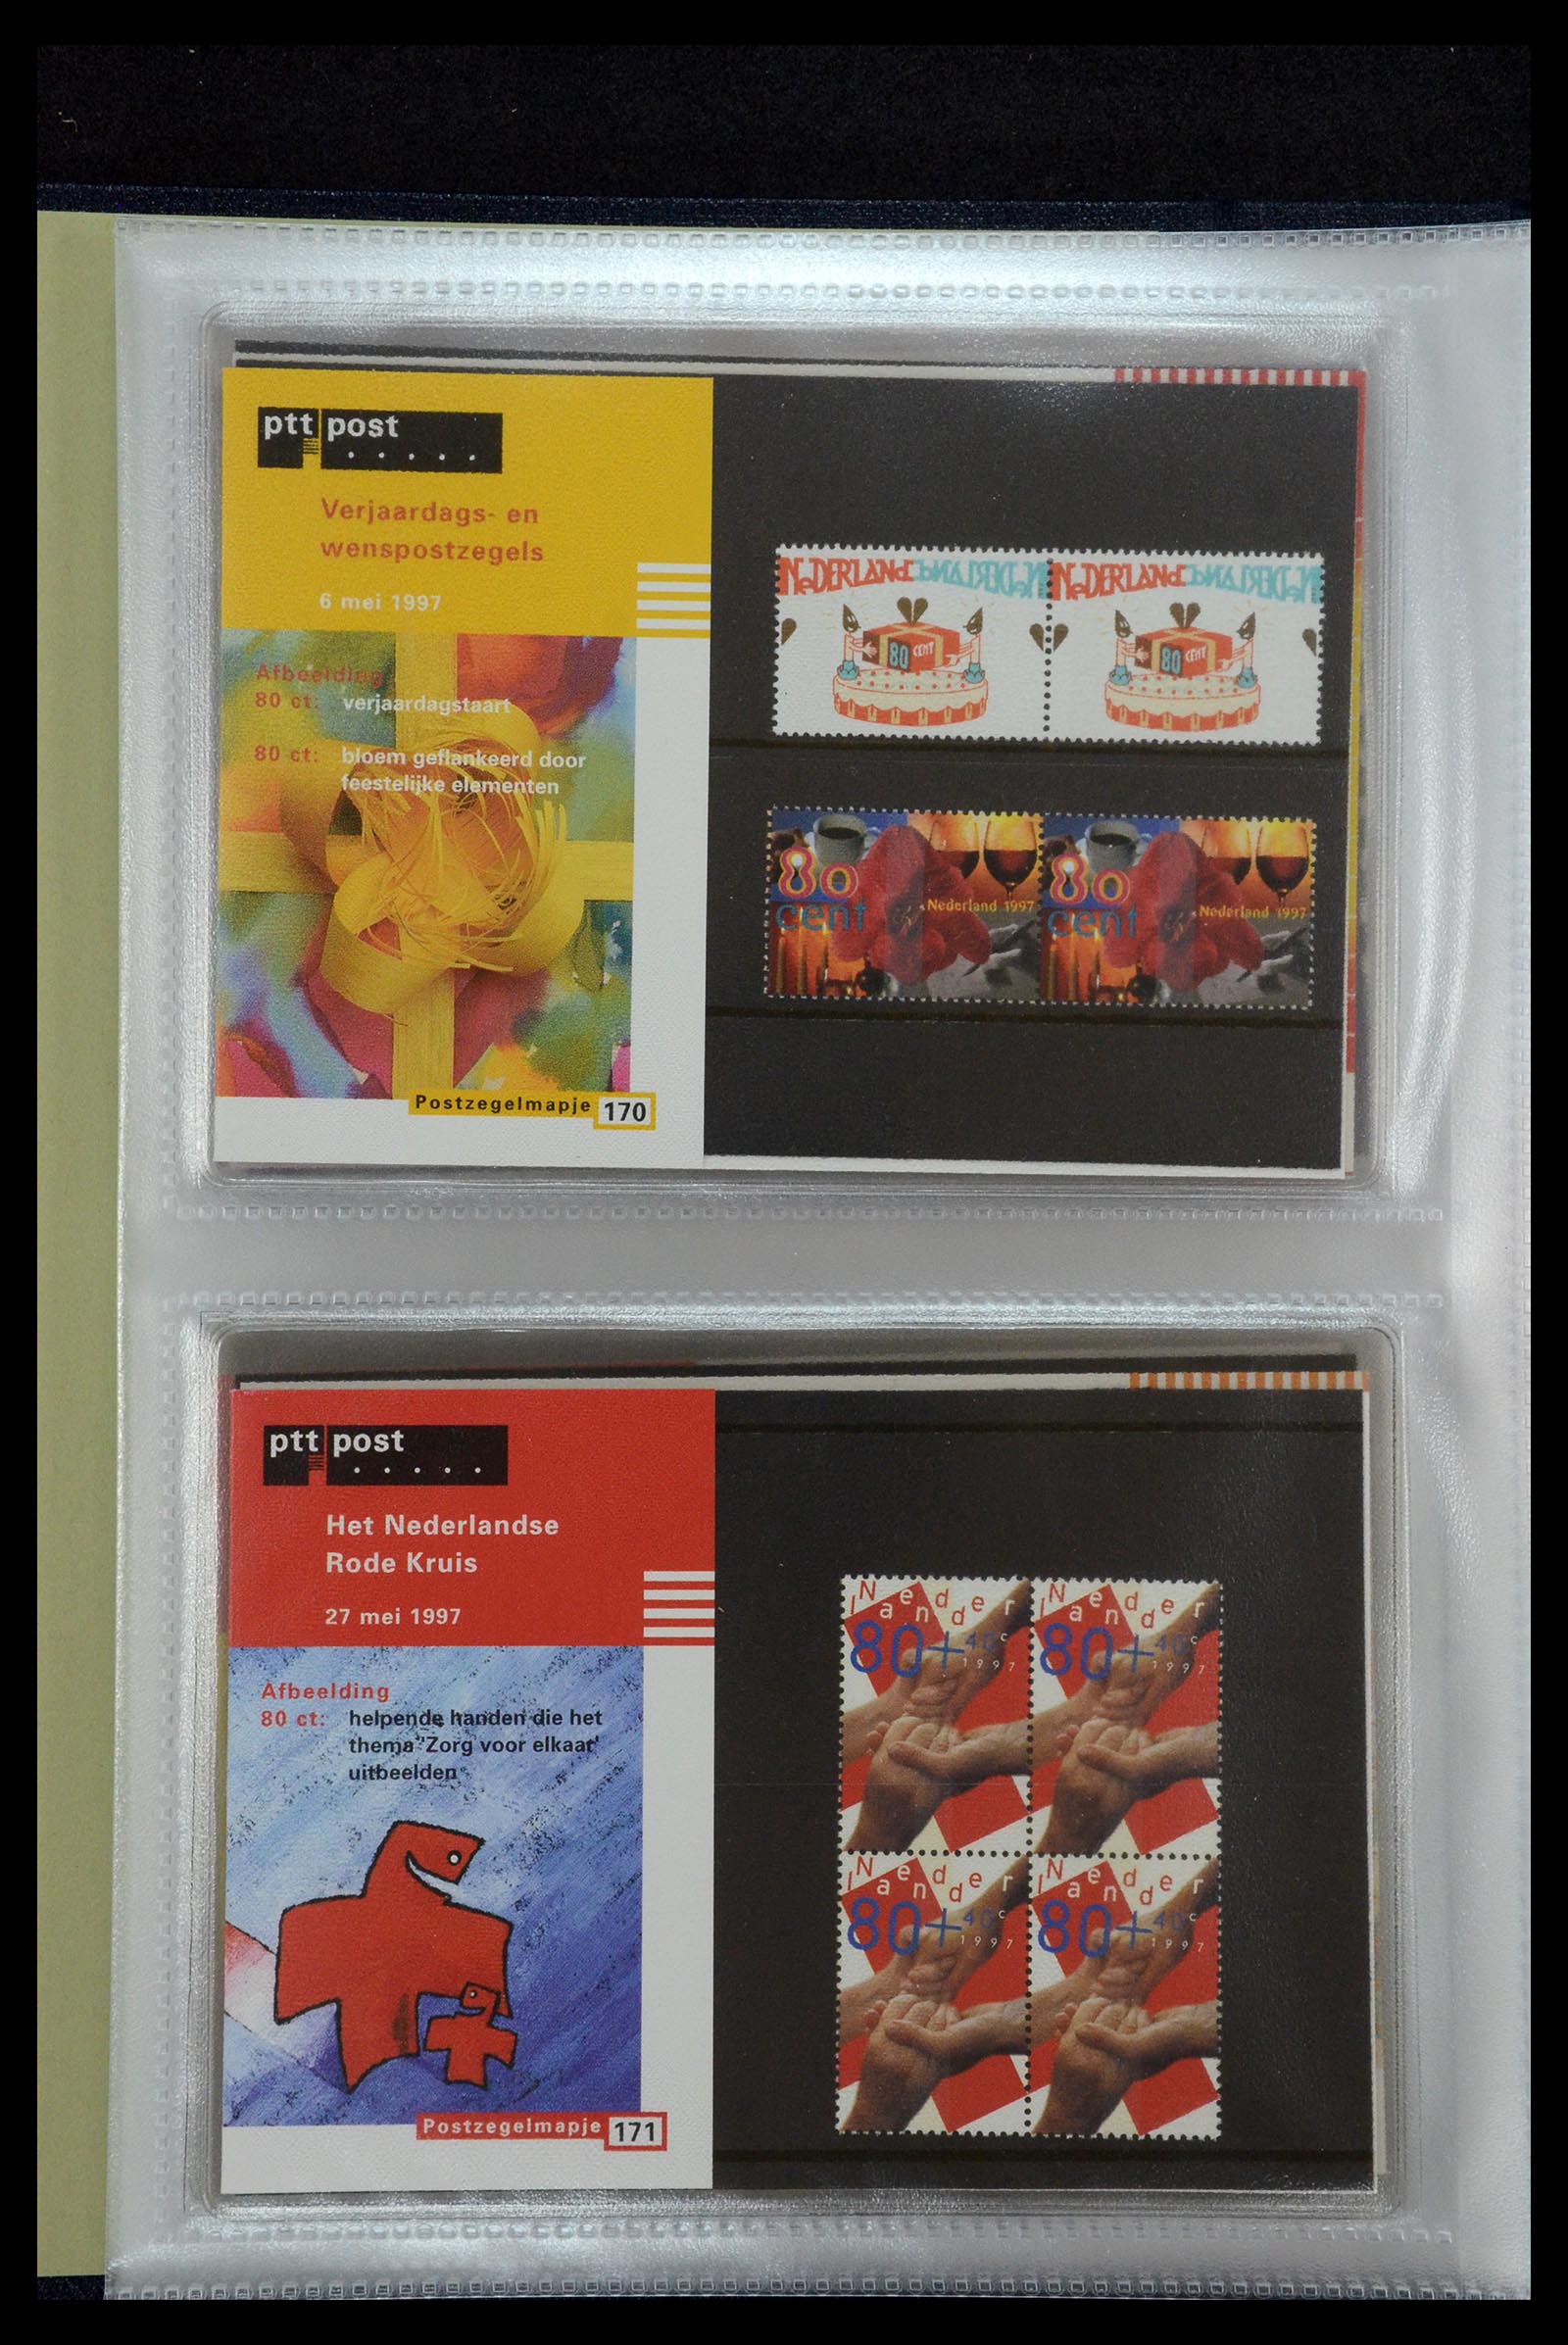 35144 088 - Stamp Collection 35144 Netherlands PTT presentation packs 1982-2021!